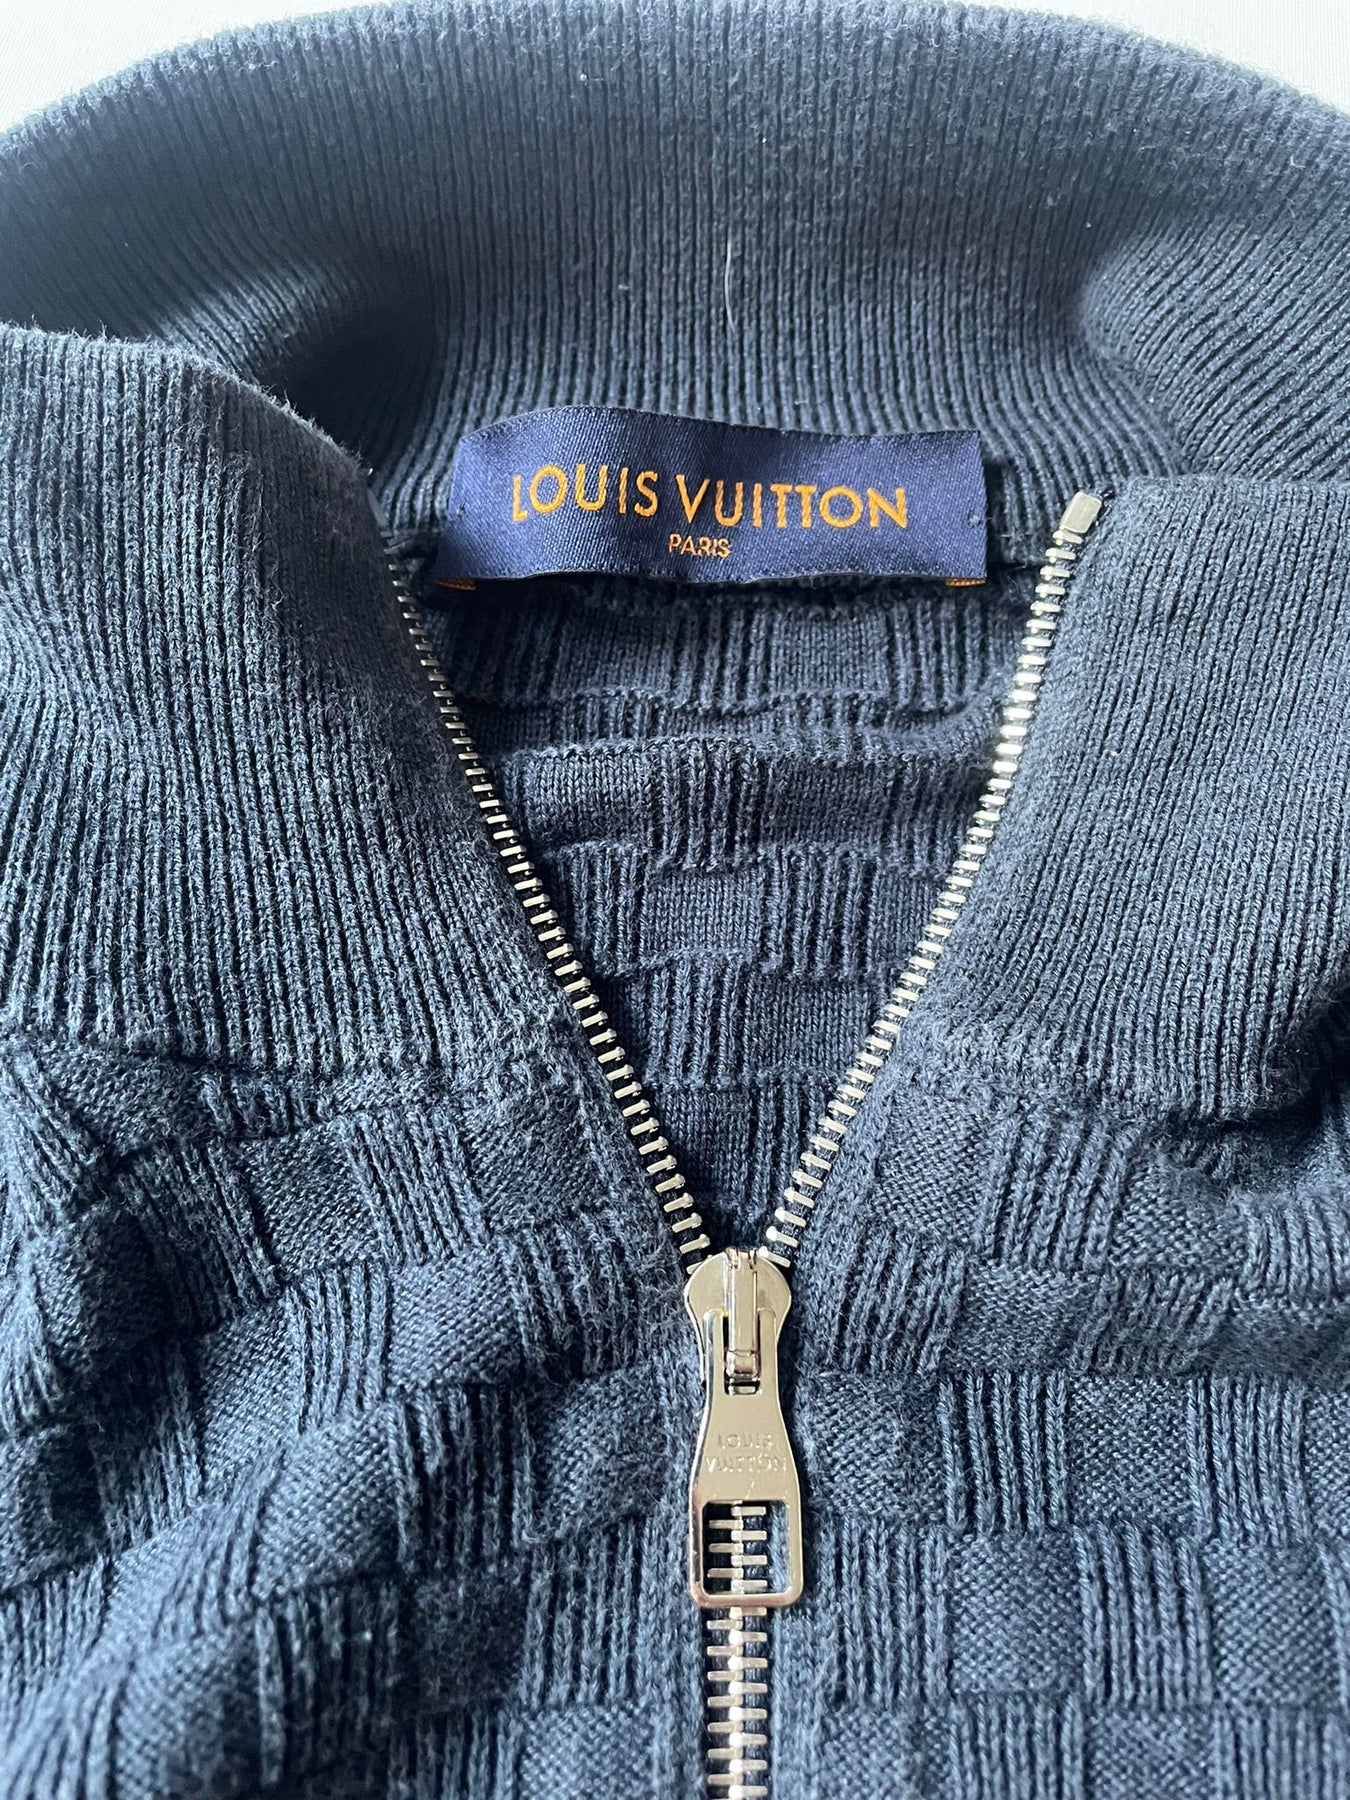 PENDING] - (EU) Louis Vuitton Damier Signature Zip-Through Cardigan Grey  1:1